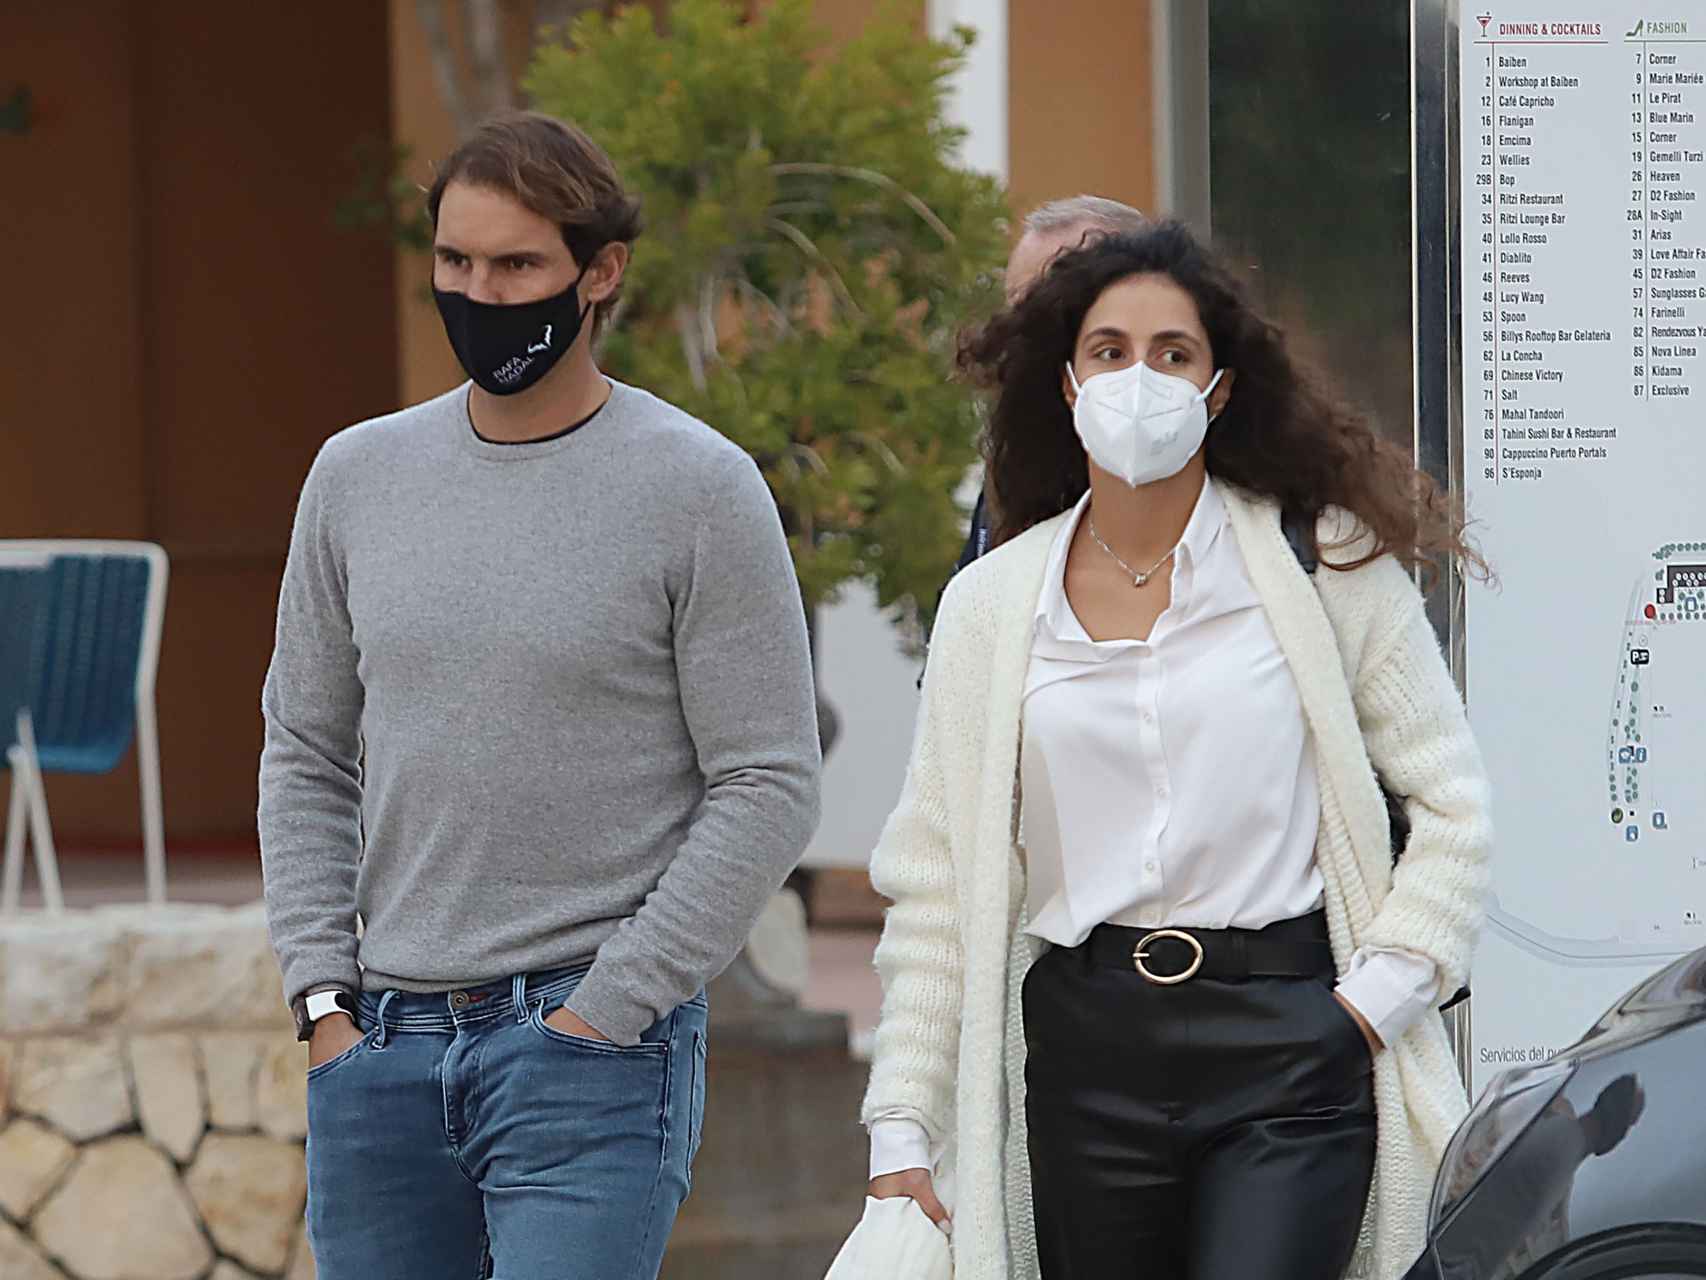 El tenista Rafa Nadal y su mujer Xisca paseando por Palma de Mallorca, en diciembre de 2020.